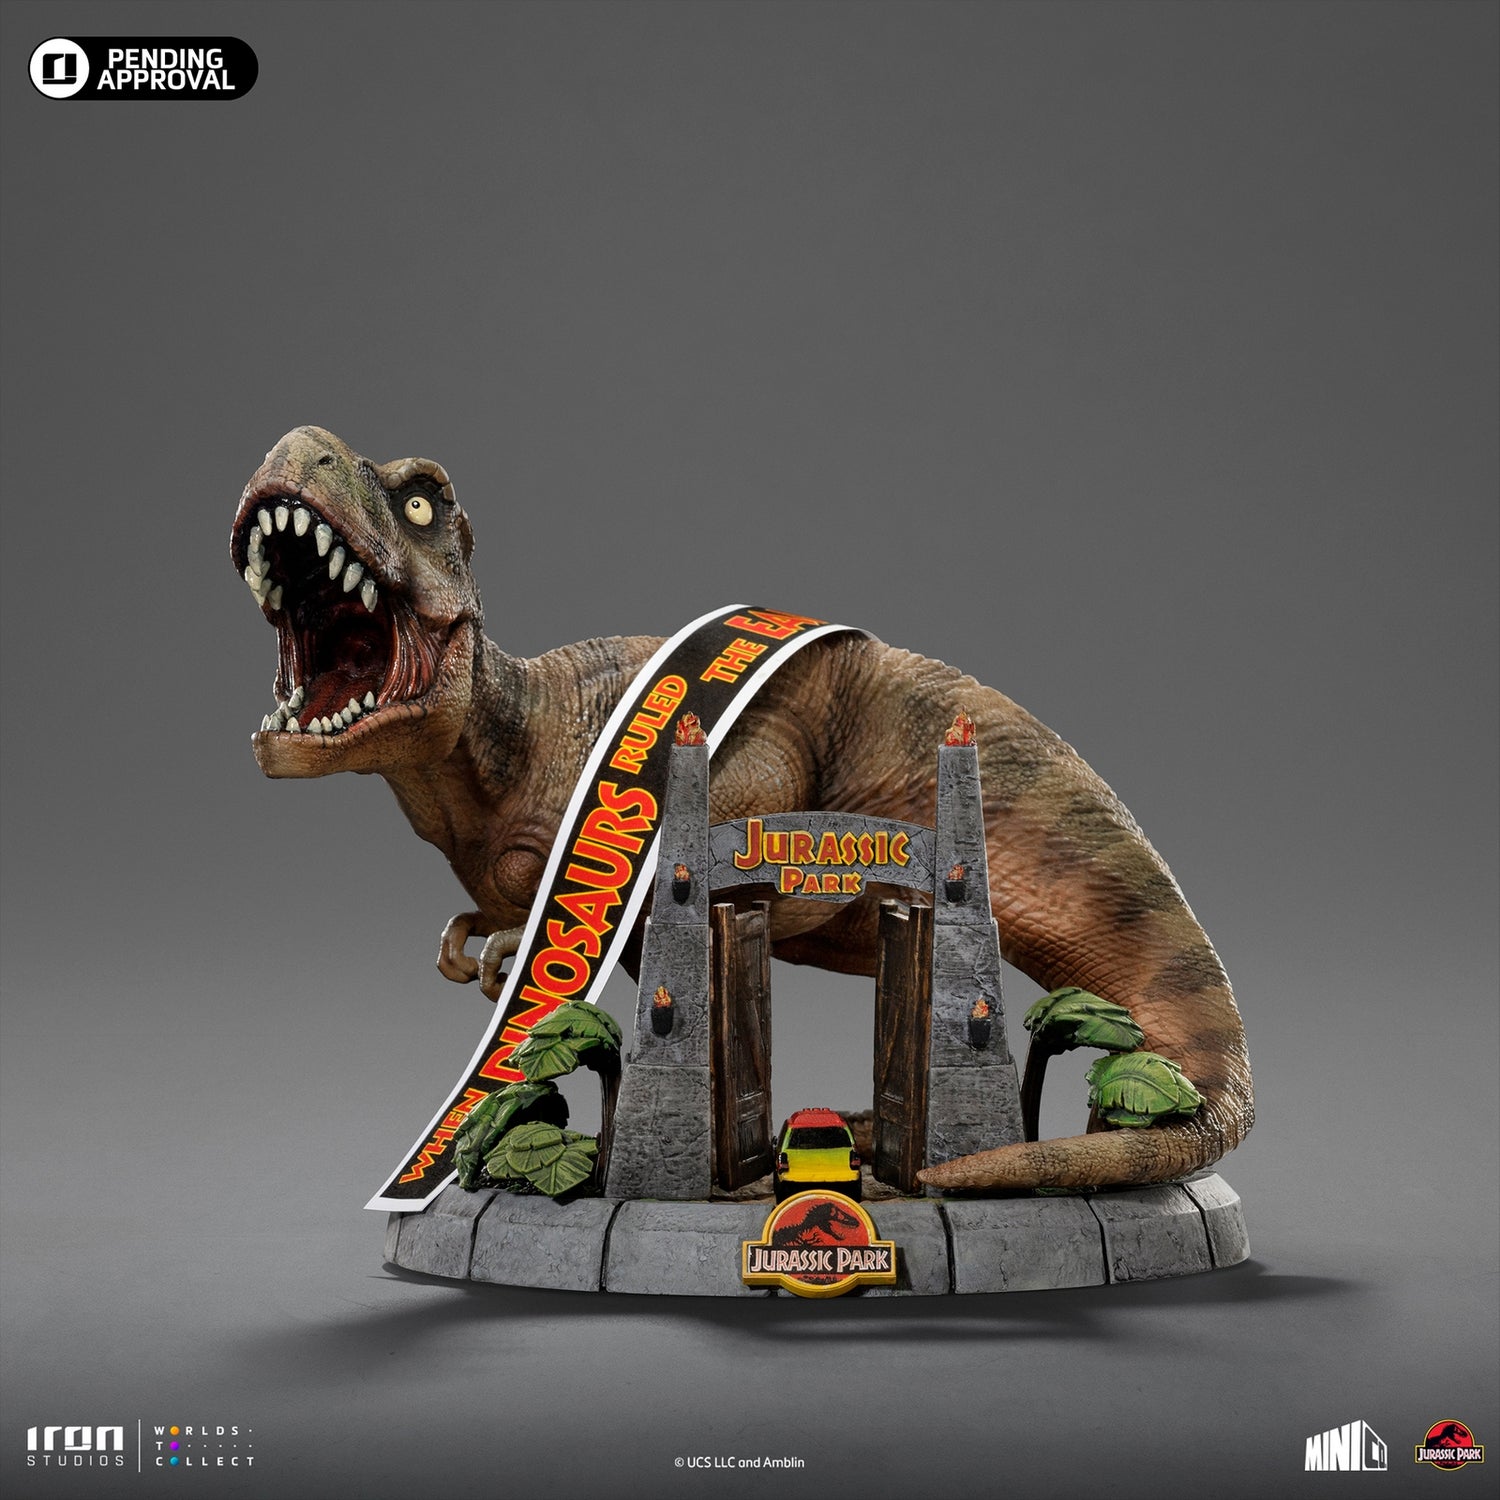 Iron Studios Jurassic Park T-Rex Illusion Deluxe Minico Limited Edition Commemorative Diorama (5.8")